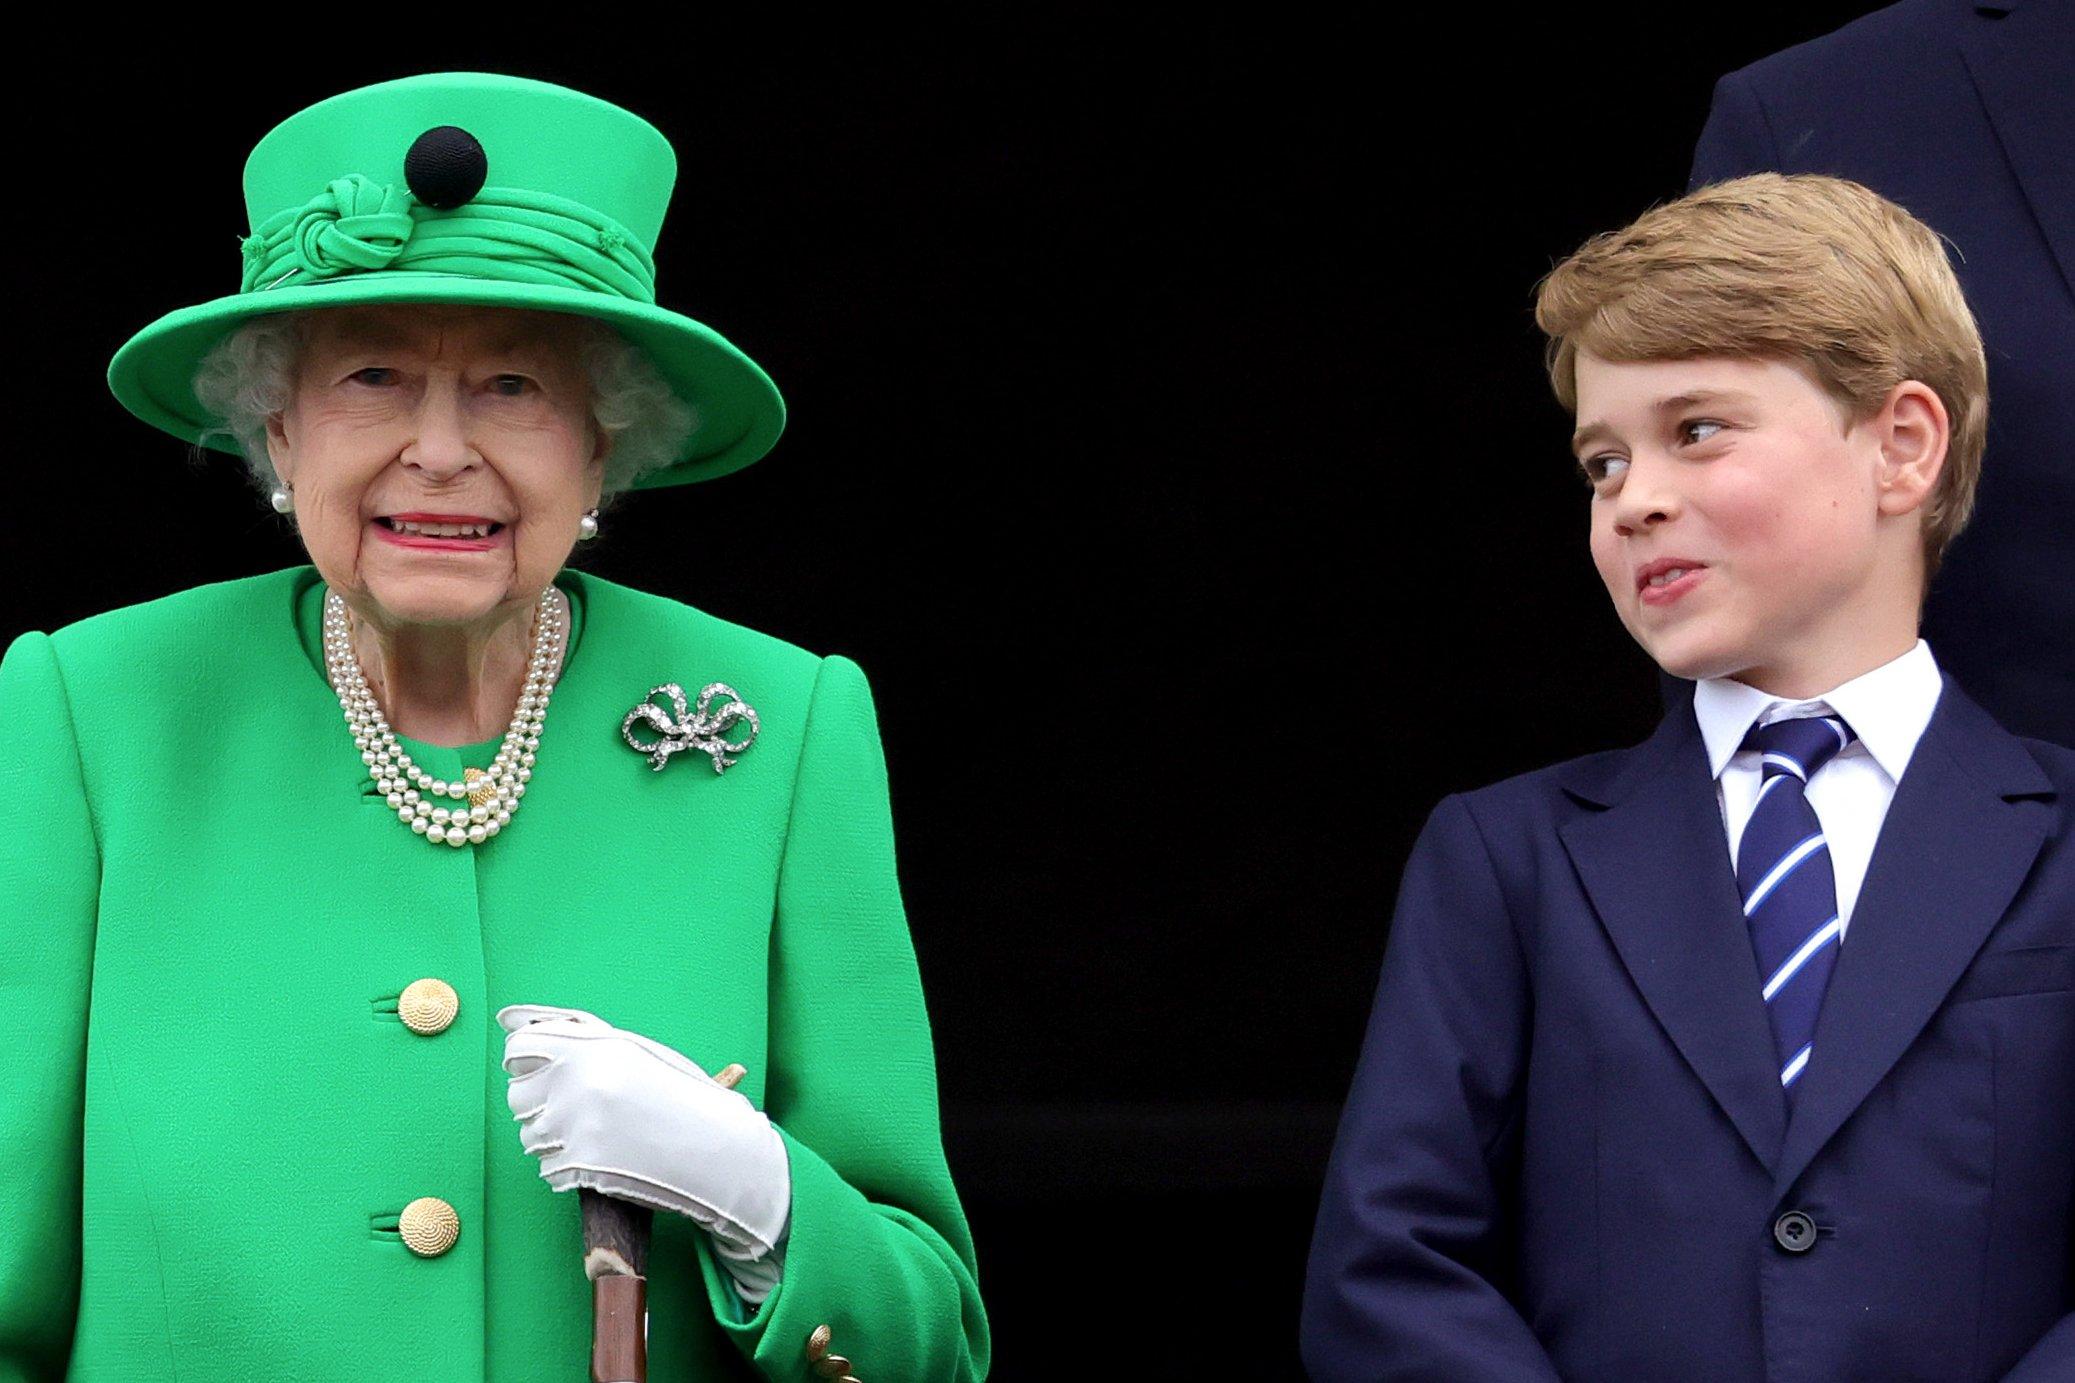 Królowa w zielonym płaszczyku i zielonym kapeluszu obok nastolatek w marynarce i w krawacie,. patrzy na nią z usmiechem